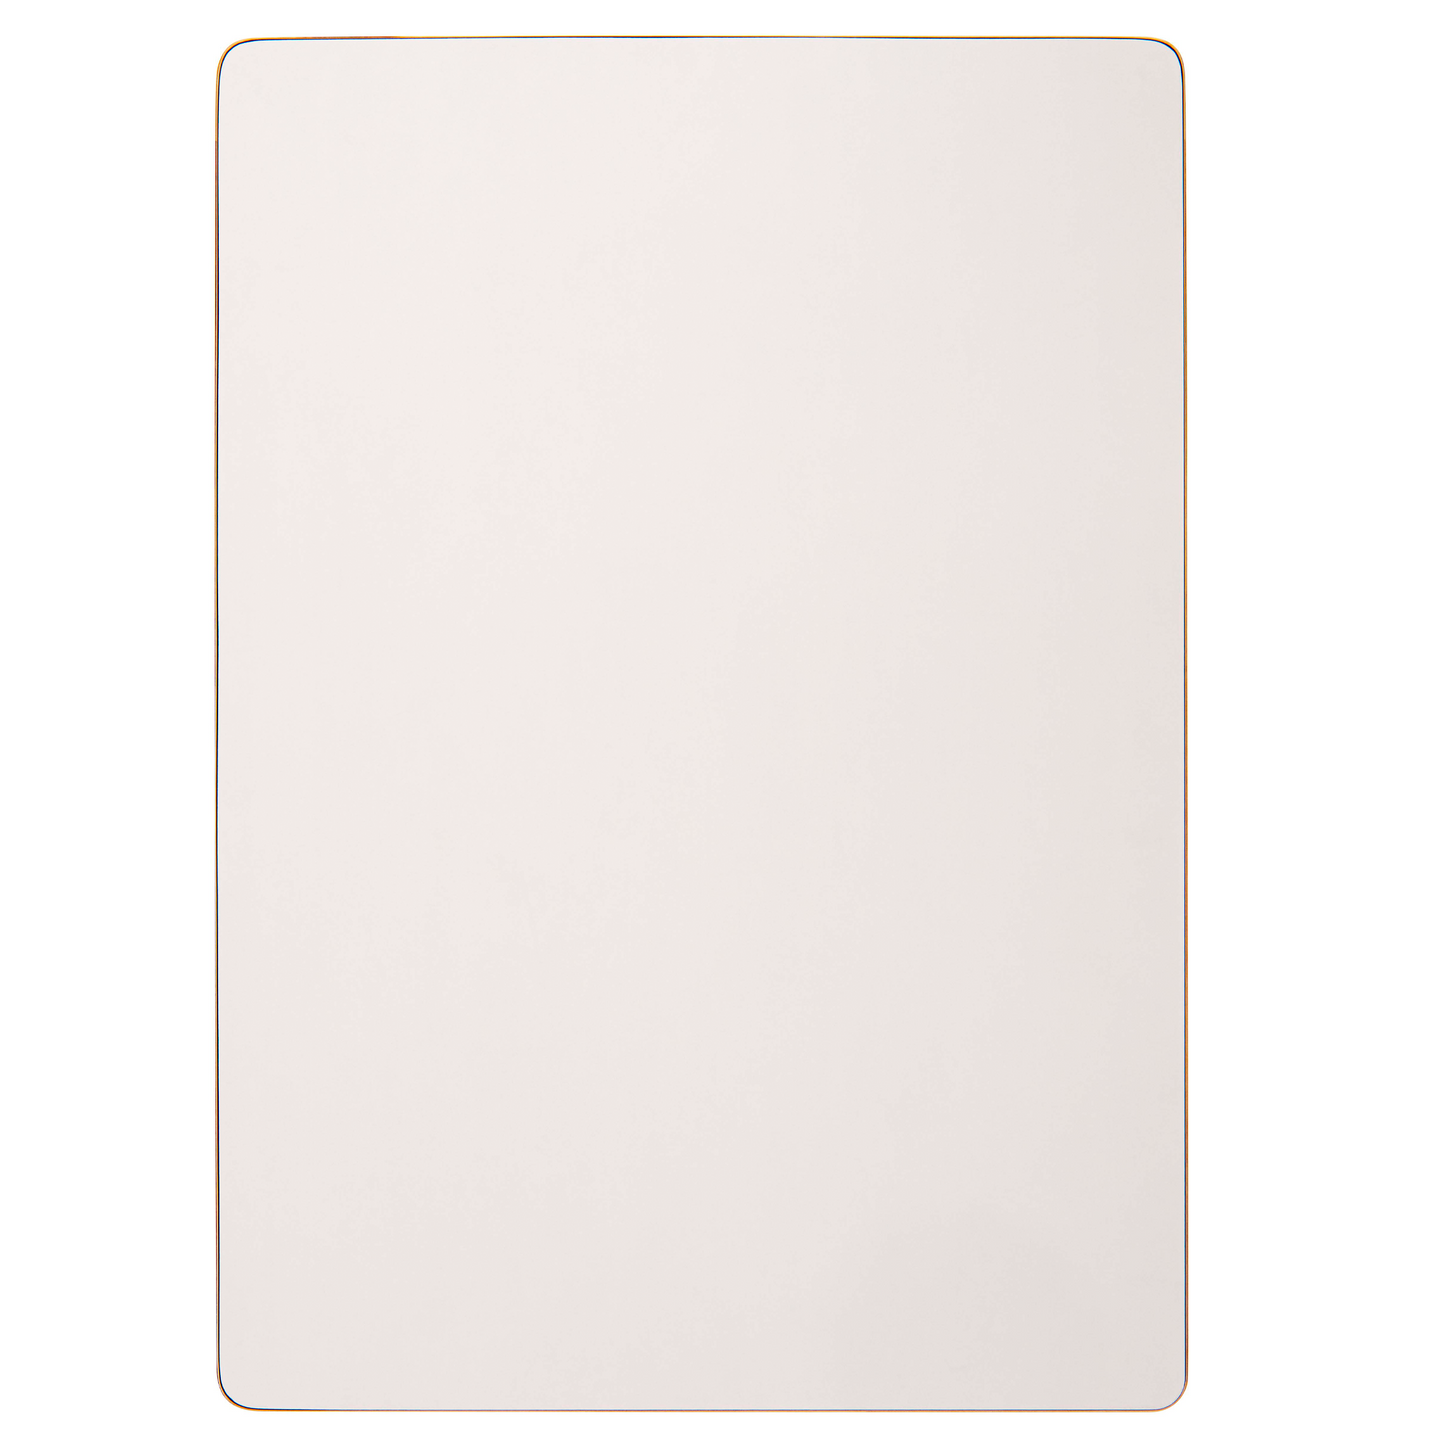 Plateau de table rectangulaire : couleur blanc - Nienhuis AMI